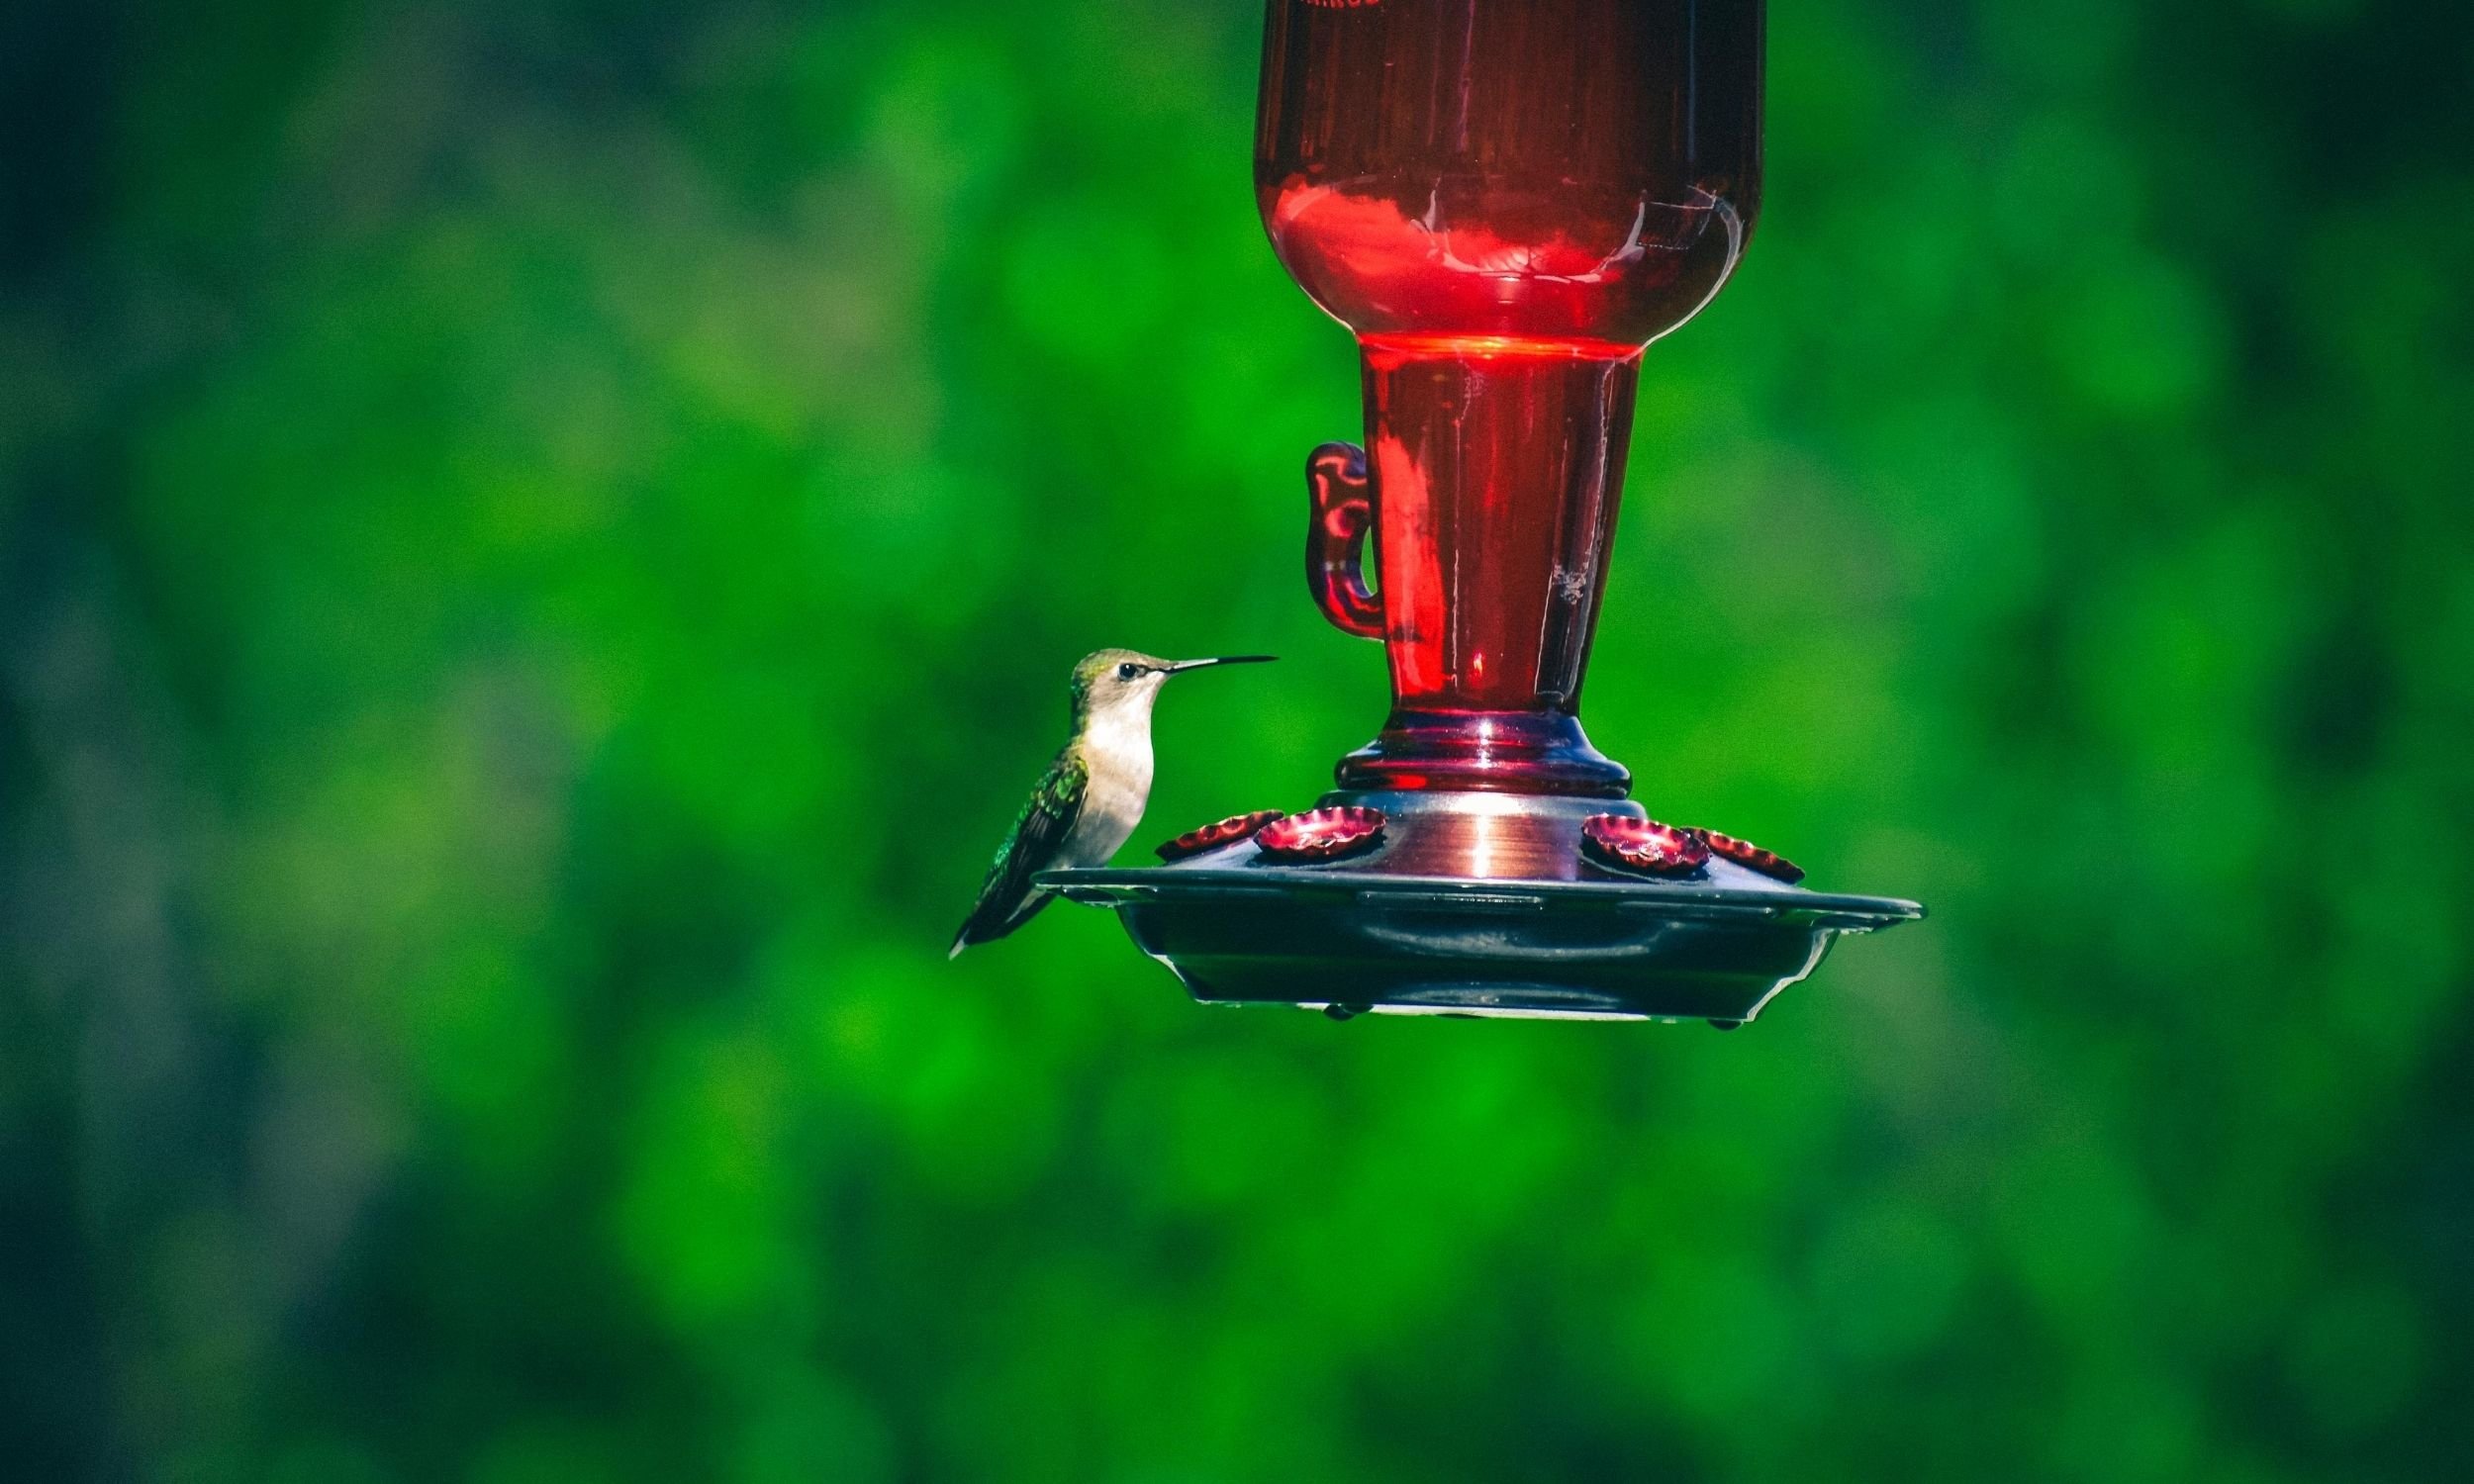 everything hummingbirds